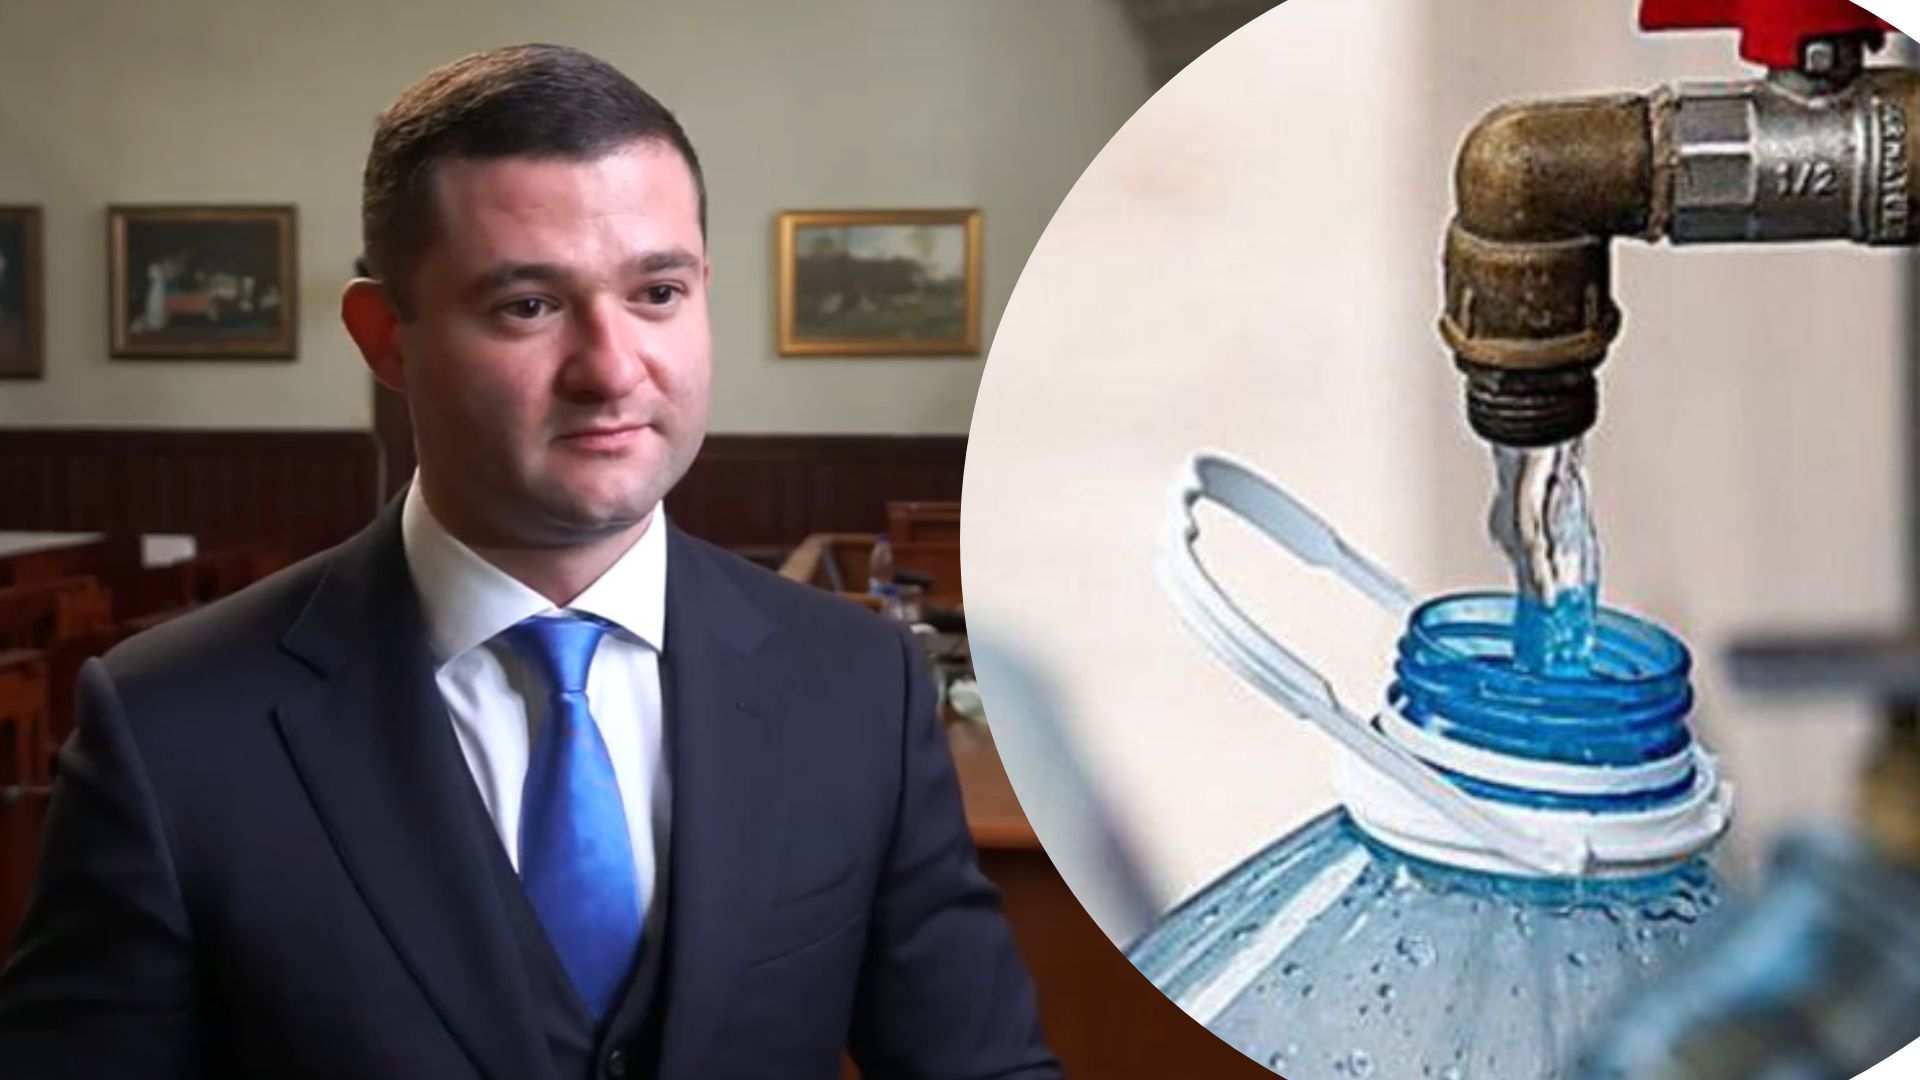 Сьогодні, 28 лютого, відбудеться сесія Мукачівської міськради, на якій знову підніматимуть питання тарифів на водопостачання.